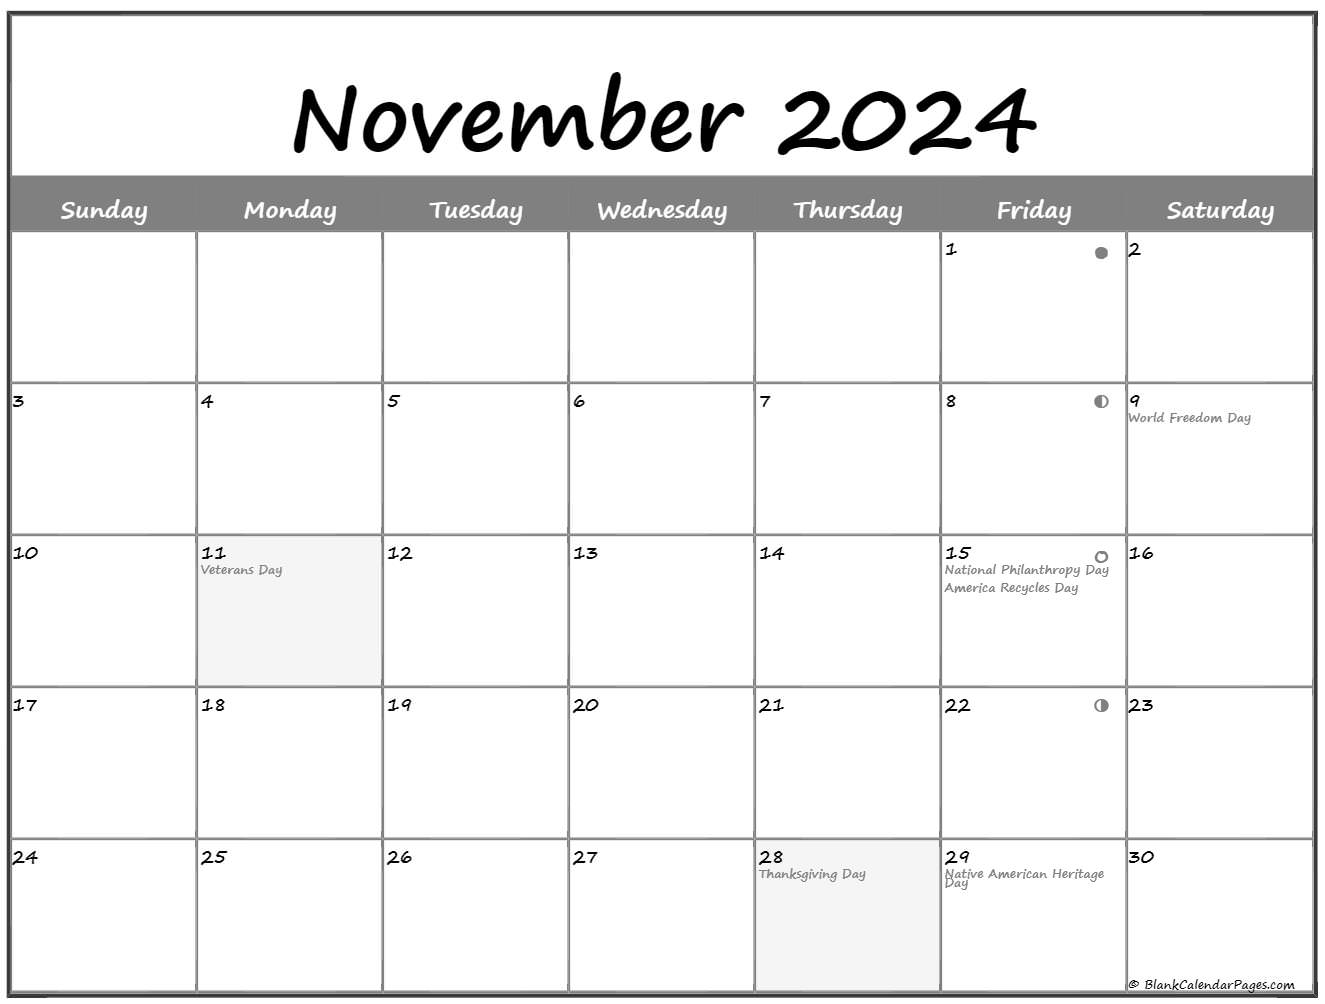 November 2022 Lunar Calendar Moon Phase Calendar